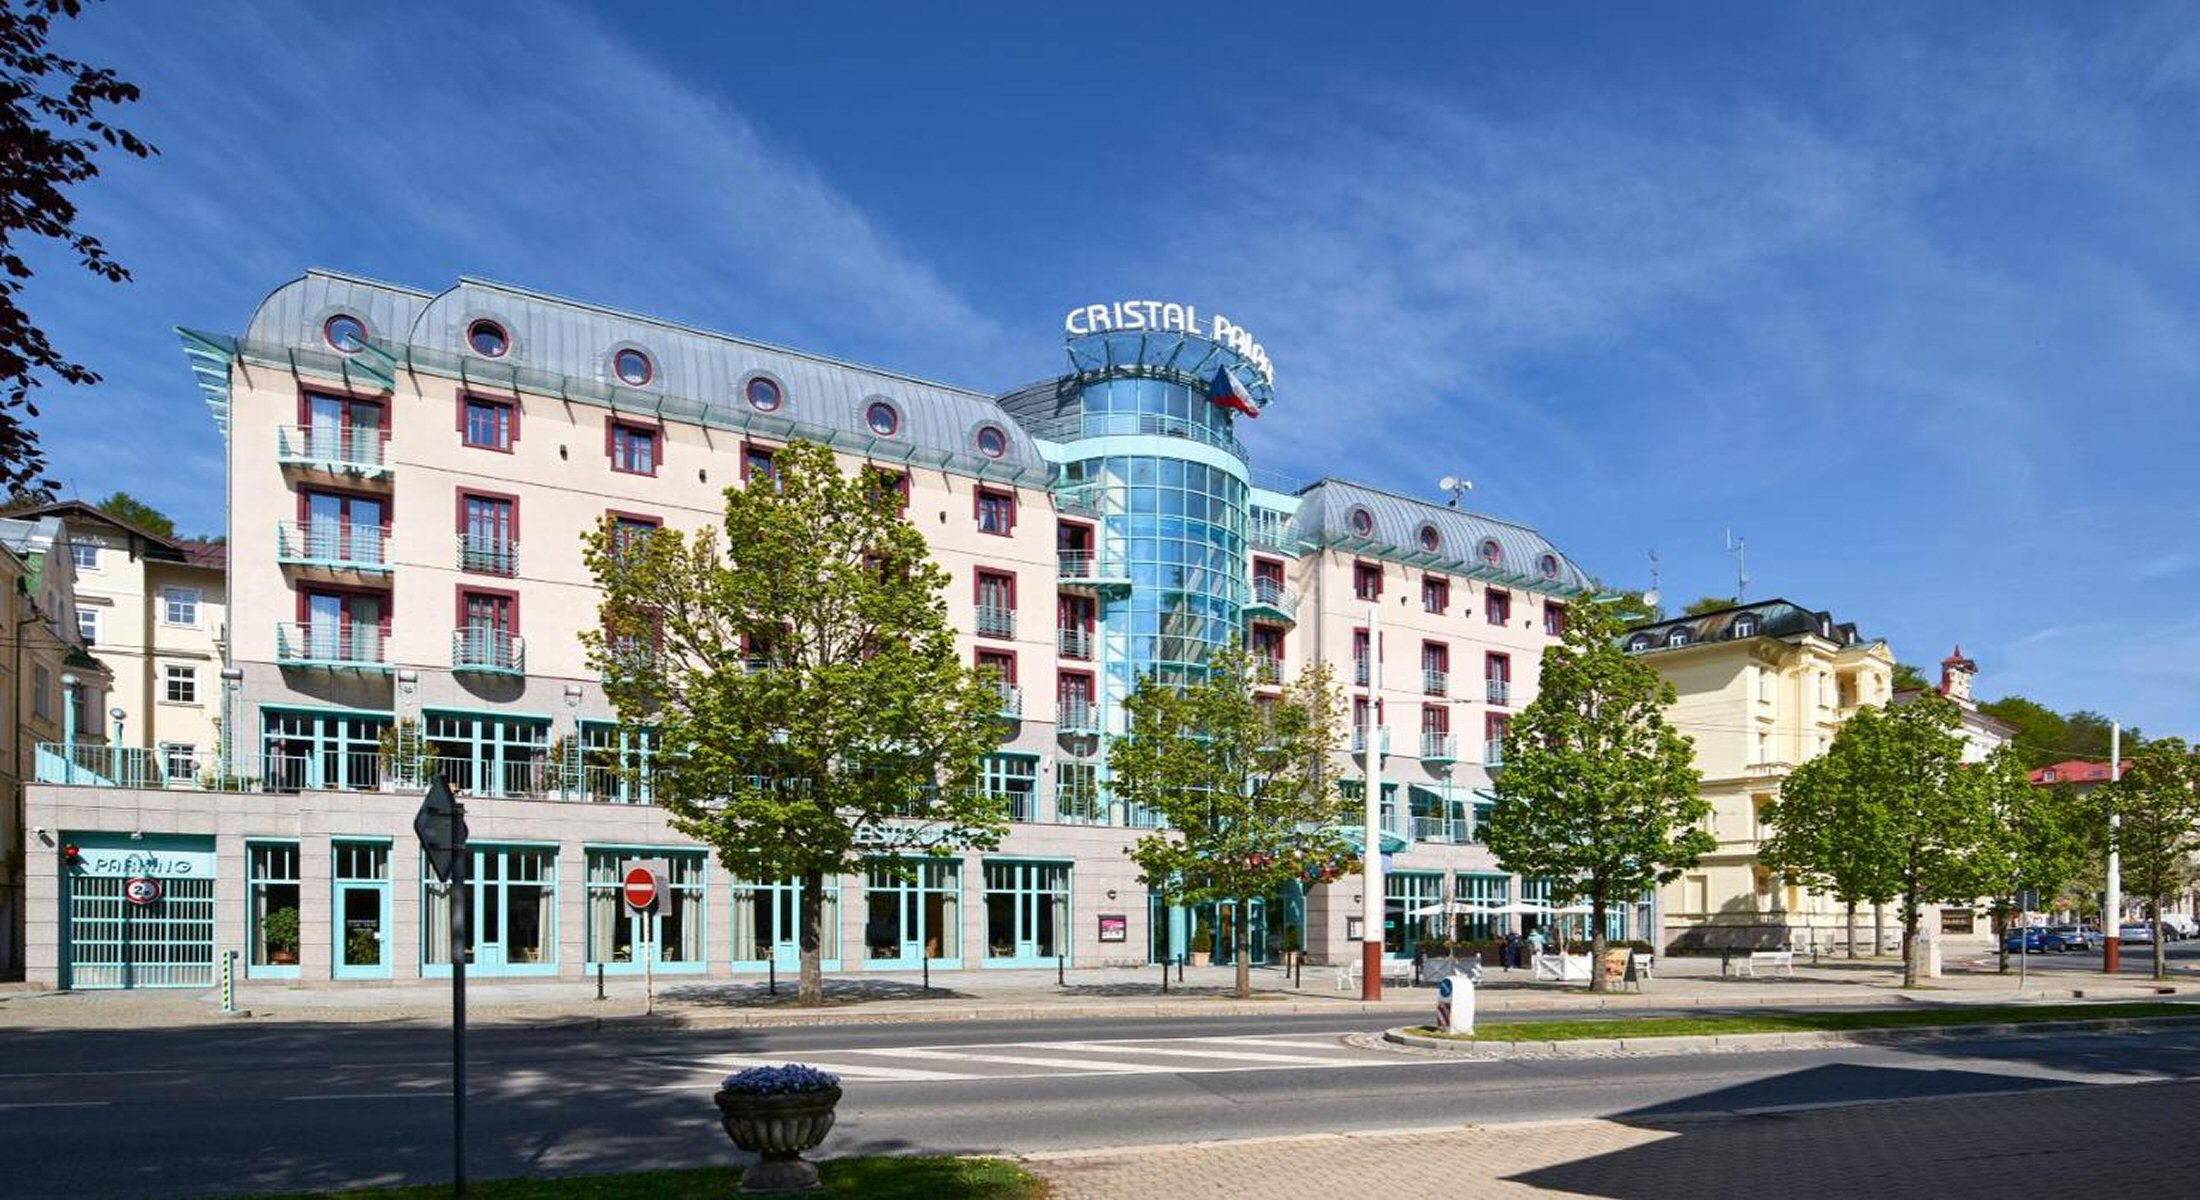 Hotel Cristal Palace photo 1 - full size